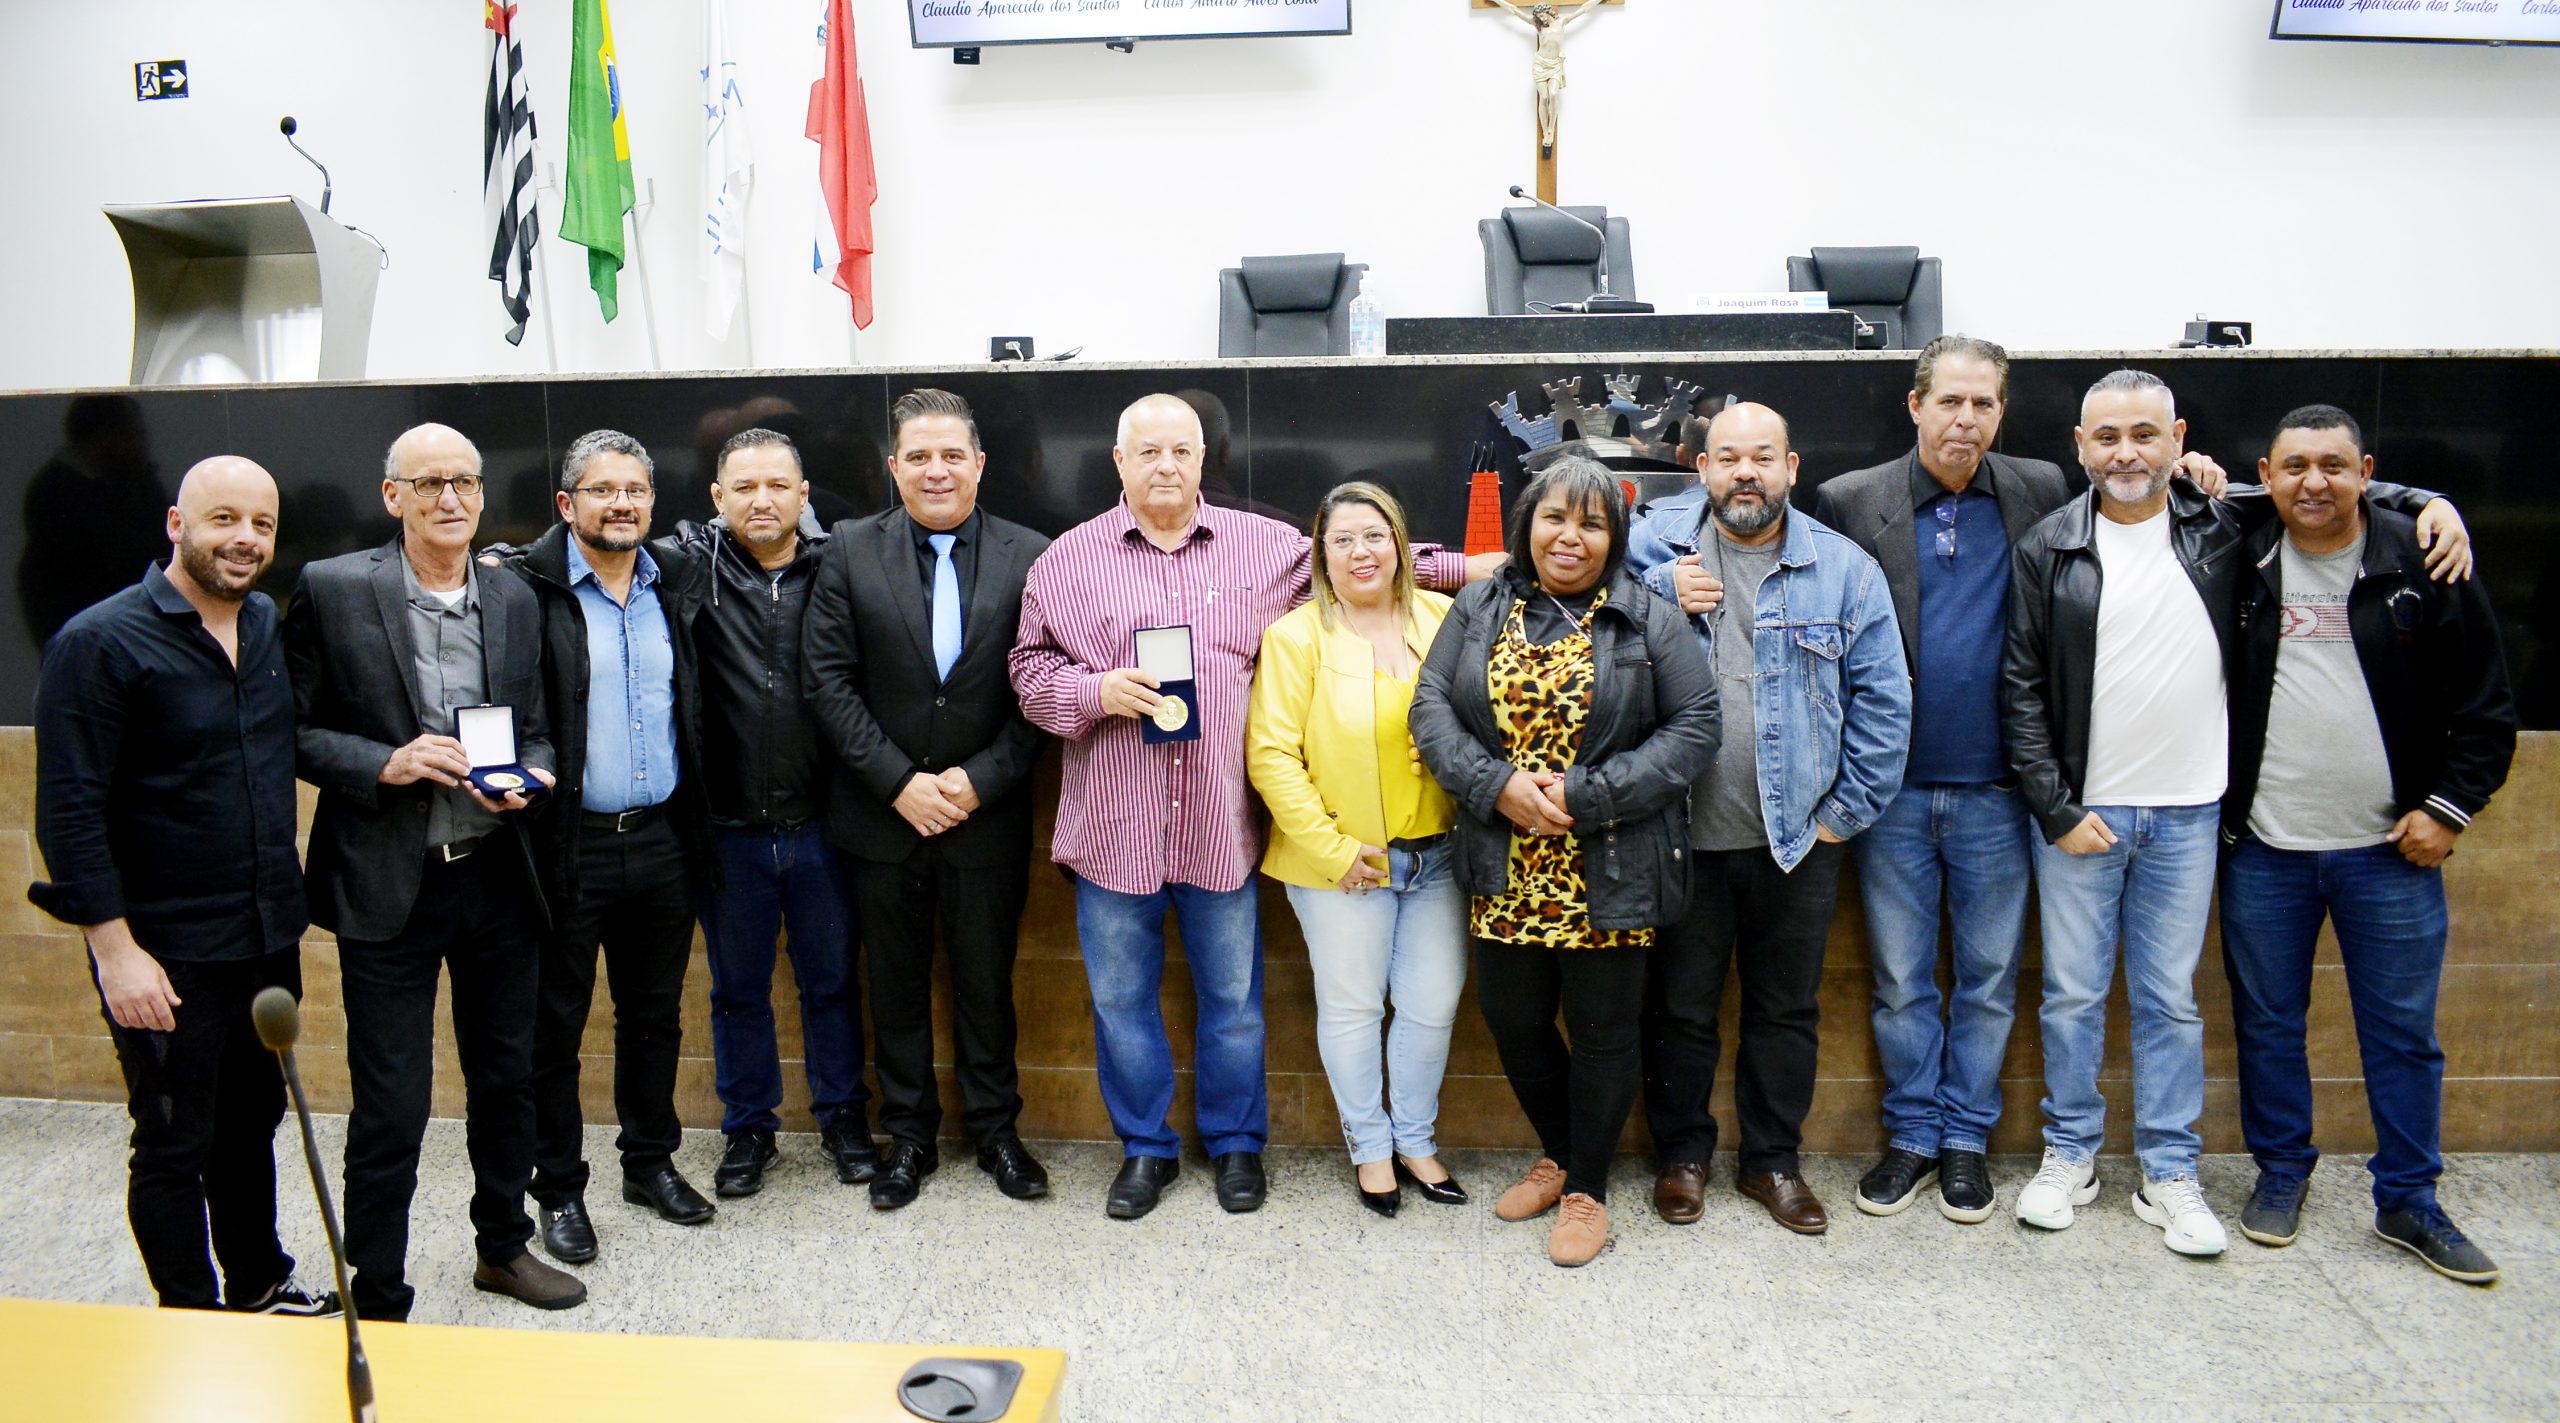 Dirigentes sindicais de 11 cidades prestigiam nossas lideranças Ted e Grillo no recebimento da Medalha Antonio Marques Figueira